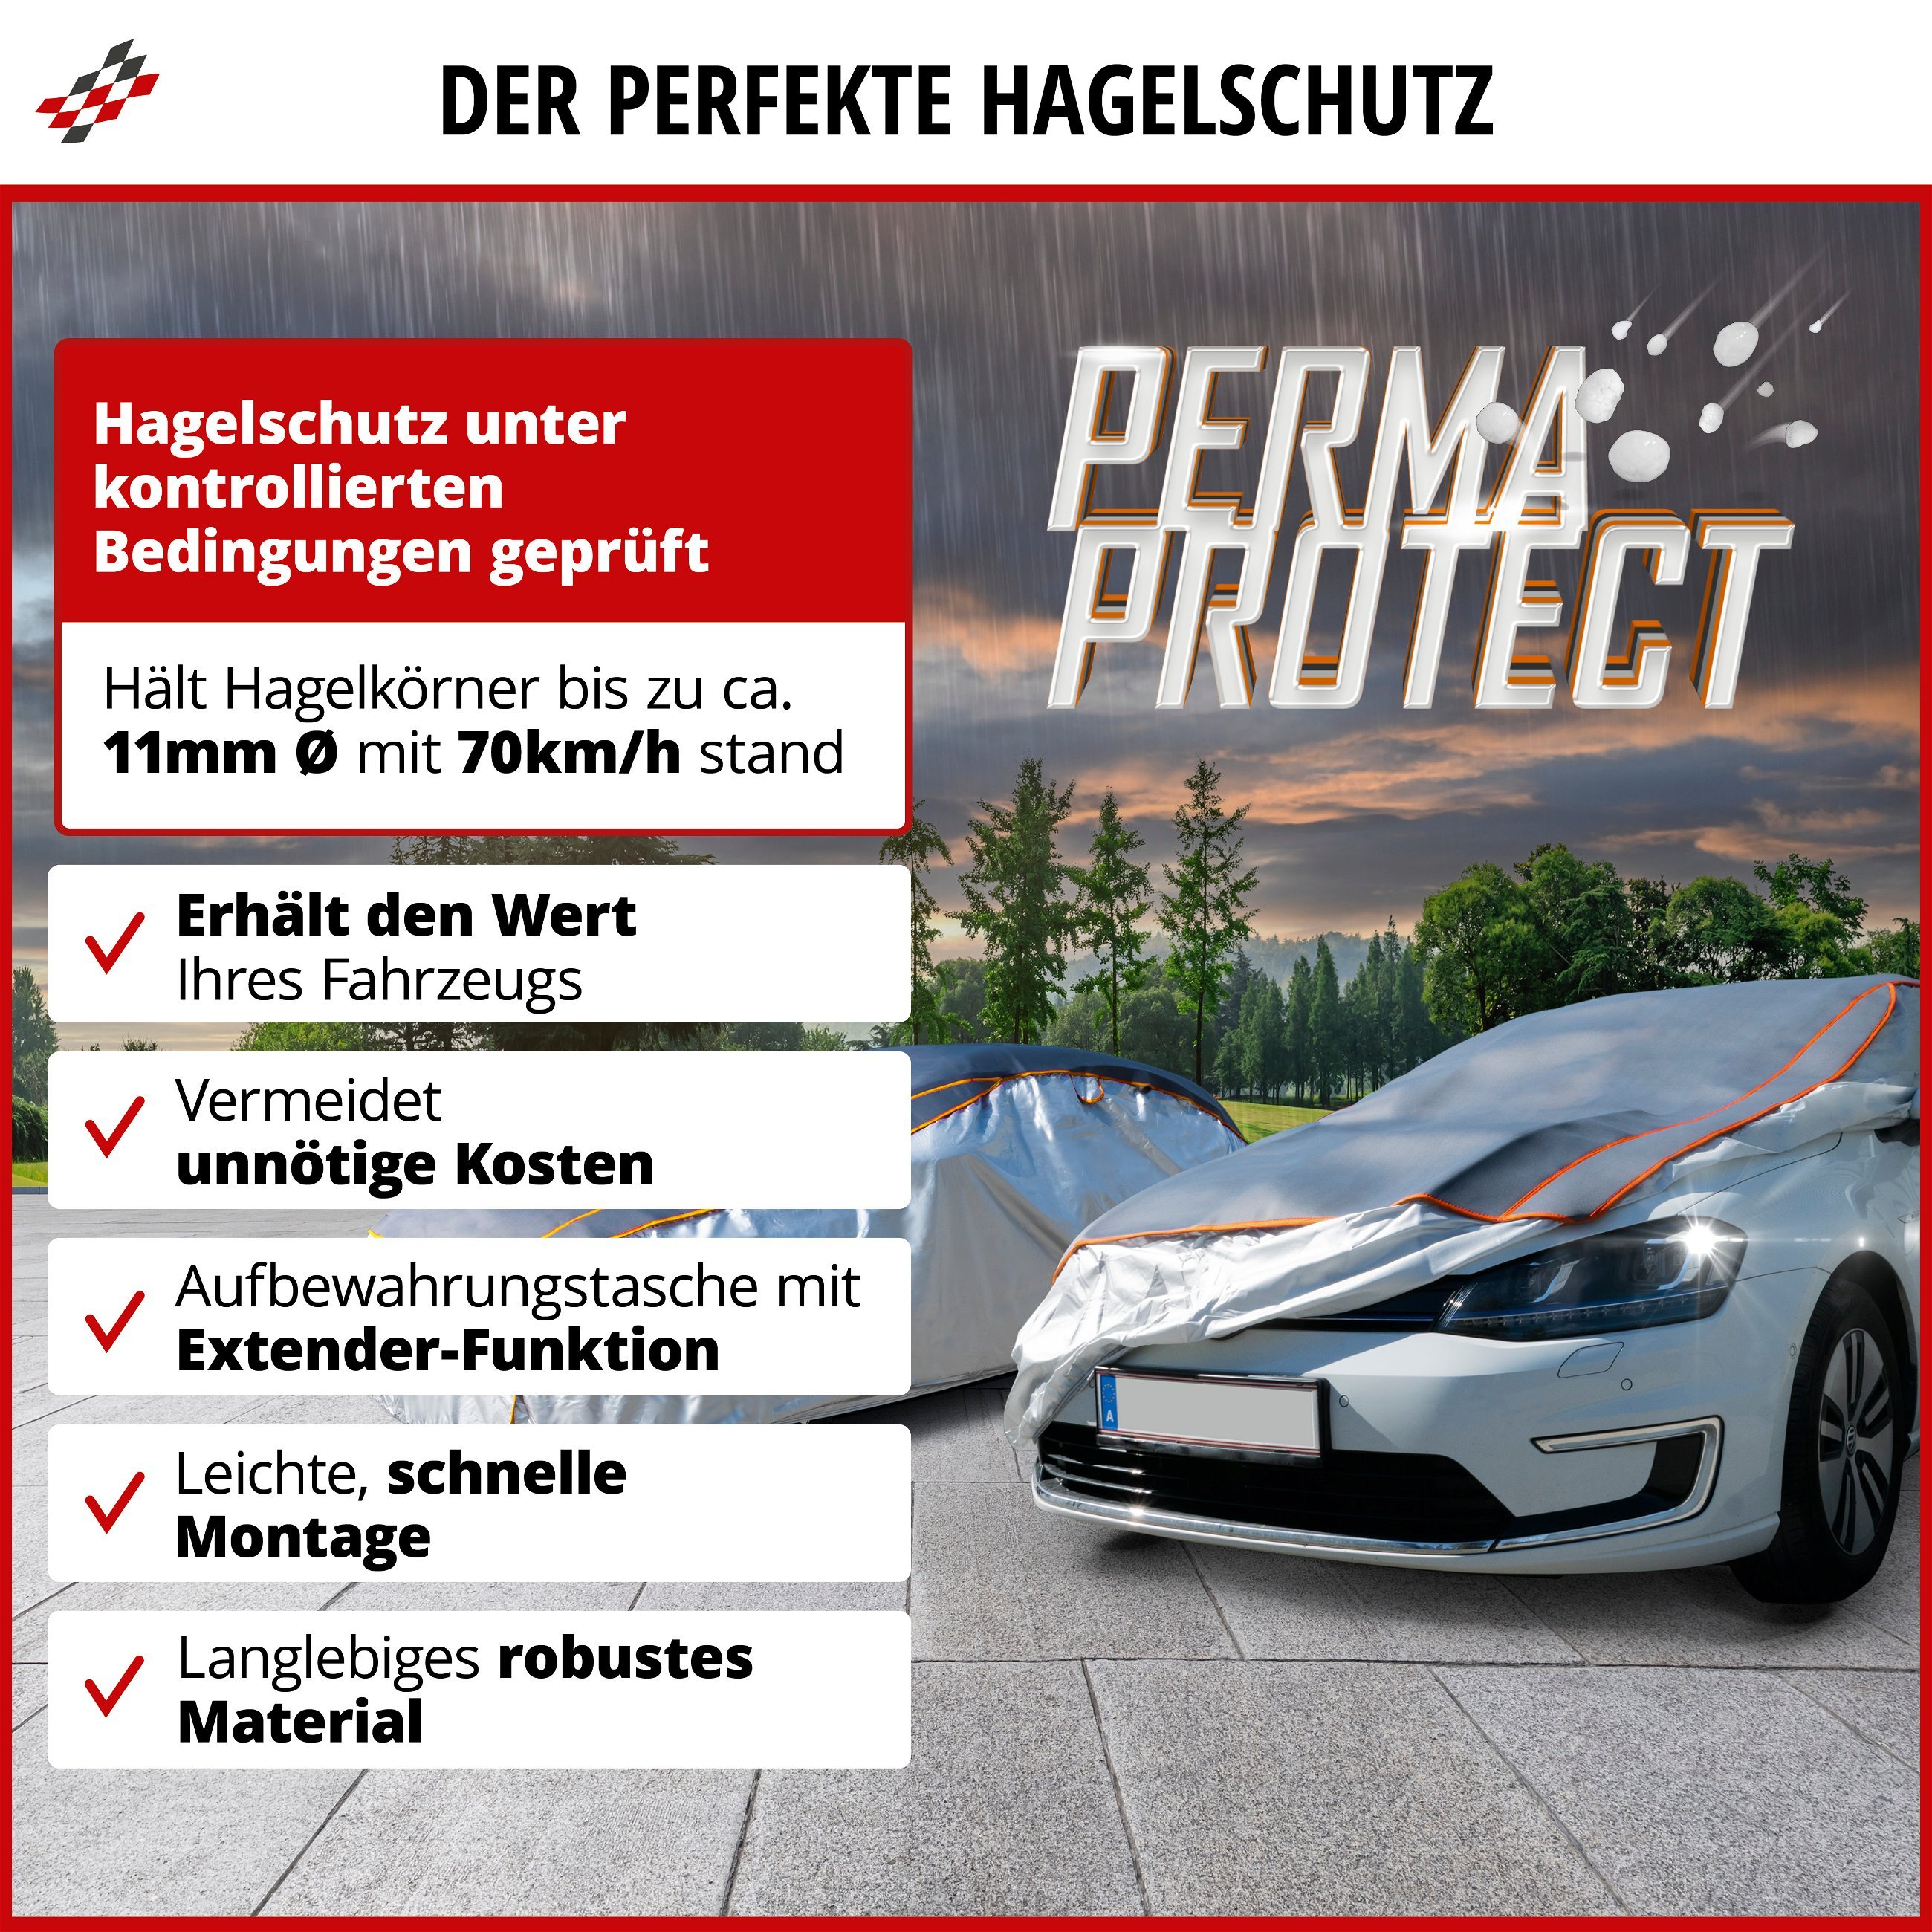 SUV Hagelschutzplane Perma Protect, Hagelschutzgarage Größe XL